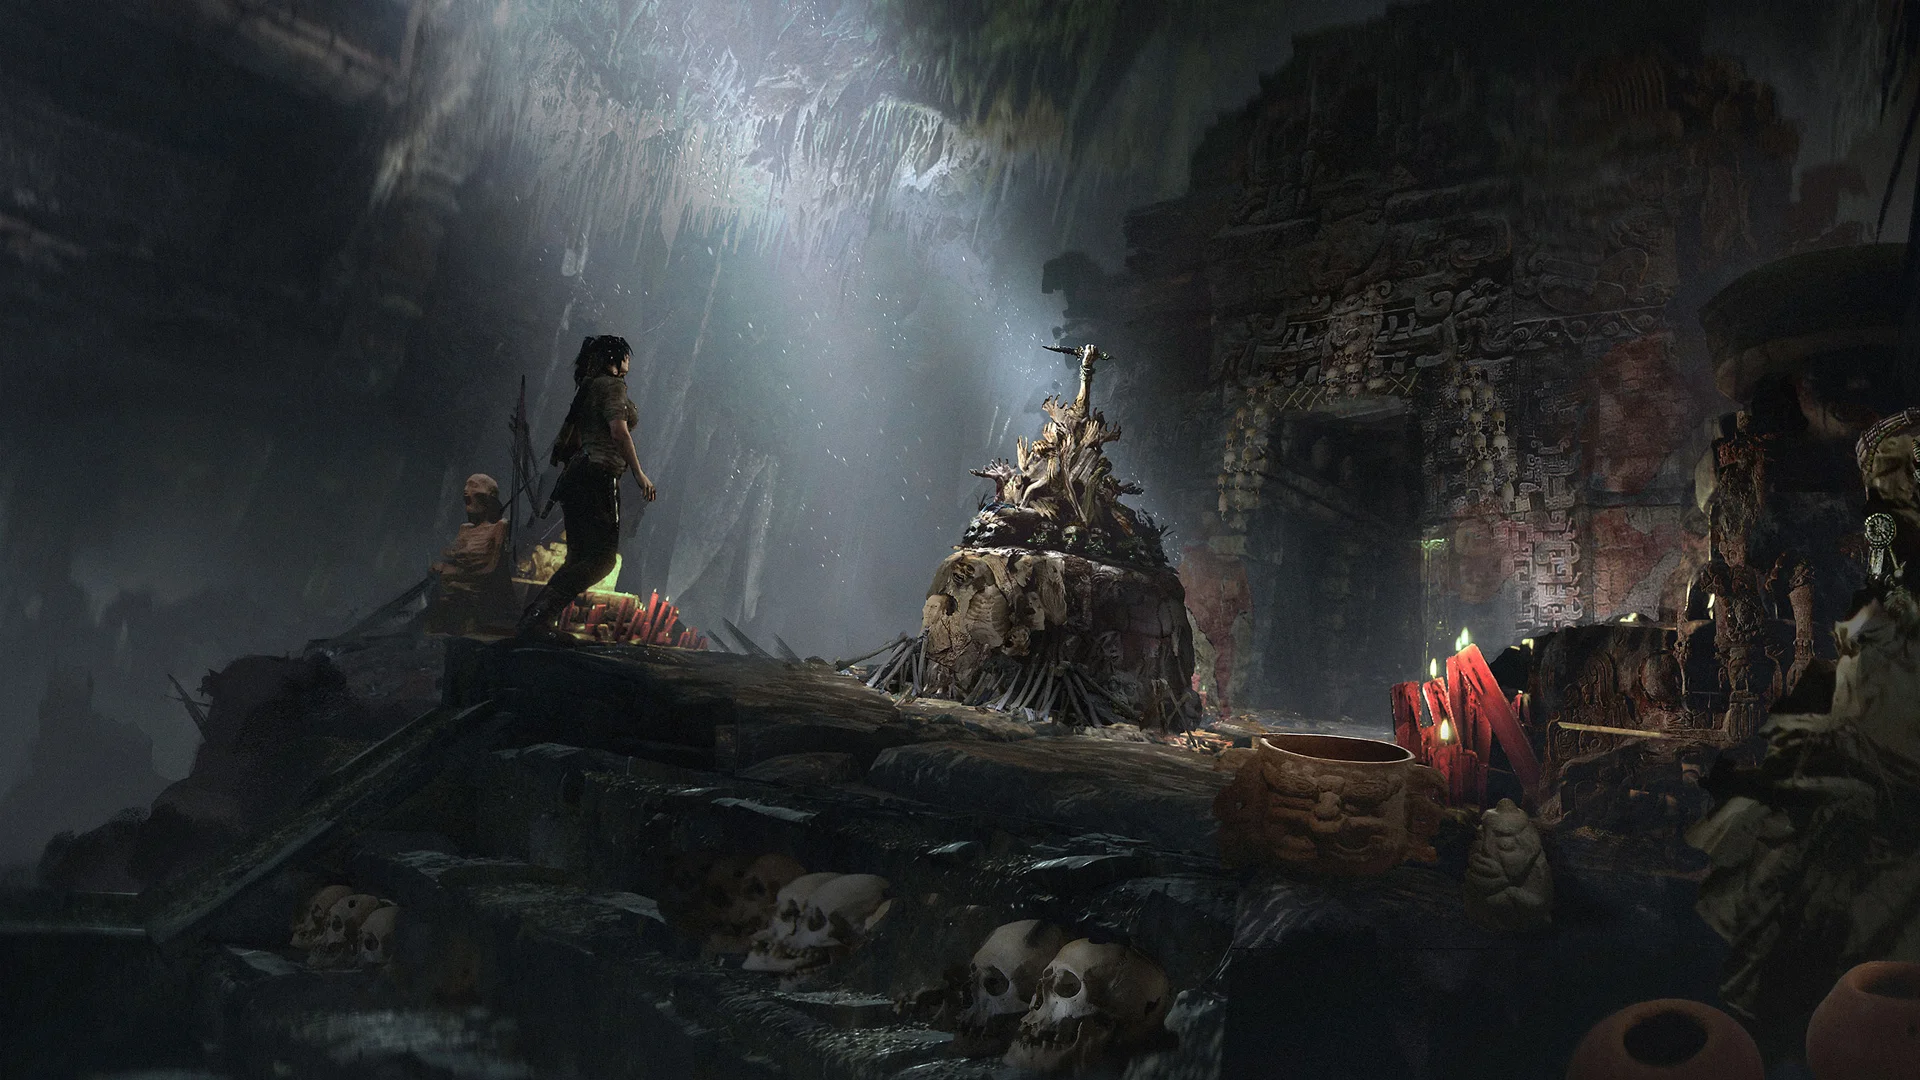 Фоторежим в Shadow of the Tomb Raider довольно простенький — из «тонких» настроек только яркость и насыщенность. Рамок чуть-чуть, фильтров тоже (и почти все не очень). Во время катсцен и добиваний противников камера заблокирована, так что полный контроль над кадром есть не всегда. Впрочем, даже такого скромного набора инструментов хватает, главное, что фоторежим вообще есть! Другое дело, что технически картинка в игре оказалась далеко не так хороша, как я ожидал. Все скриншоты сделаны на Xbox One X.